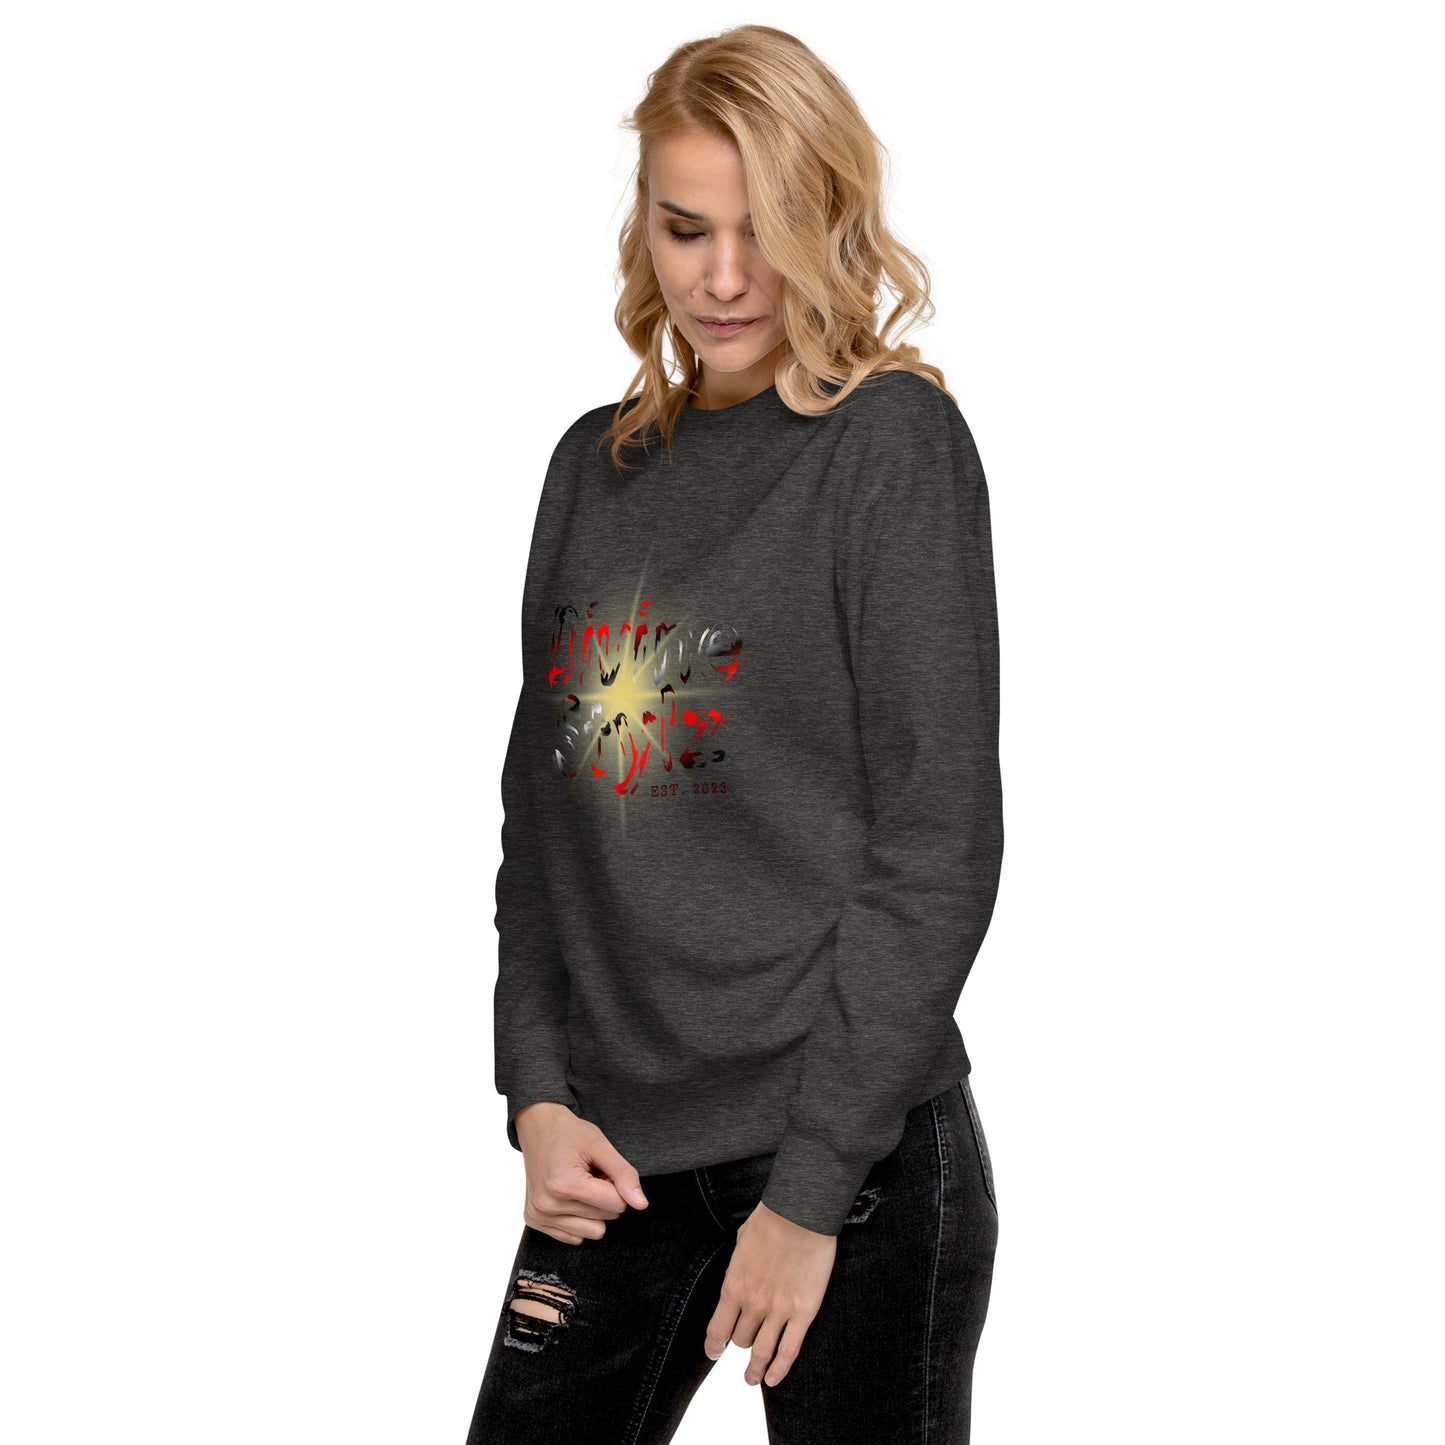 Unisex Premium Sweatshirt - Divine Stylz 'Shattered Star'